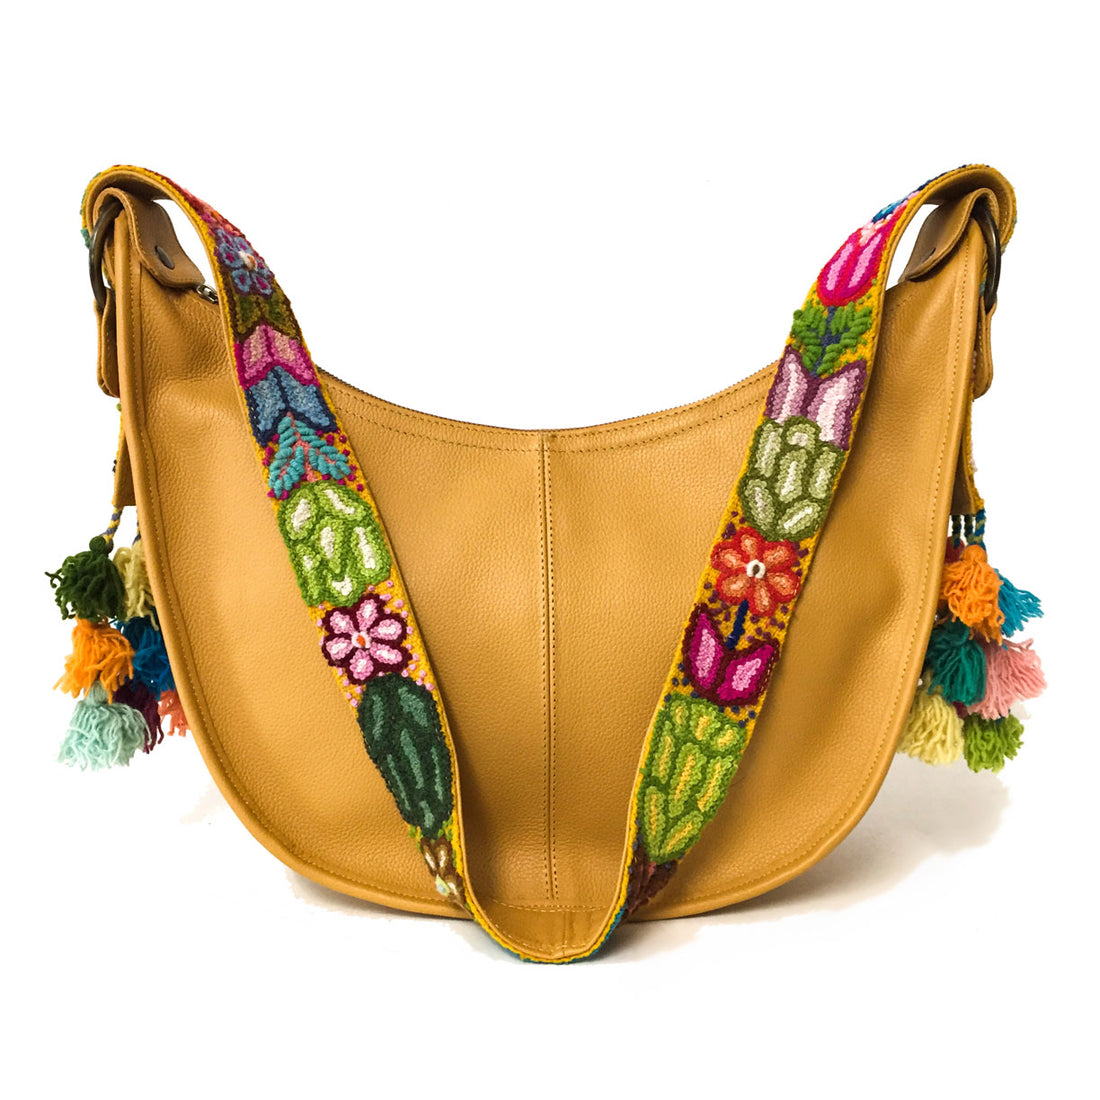 Bolsa de piel amplia para mujer de asa larga crossbody con cierre y artesanía de bordados peruanos color amarillo